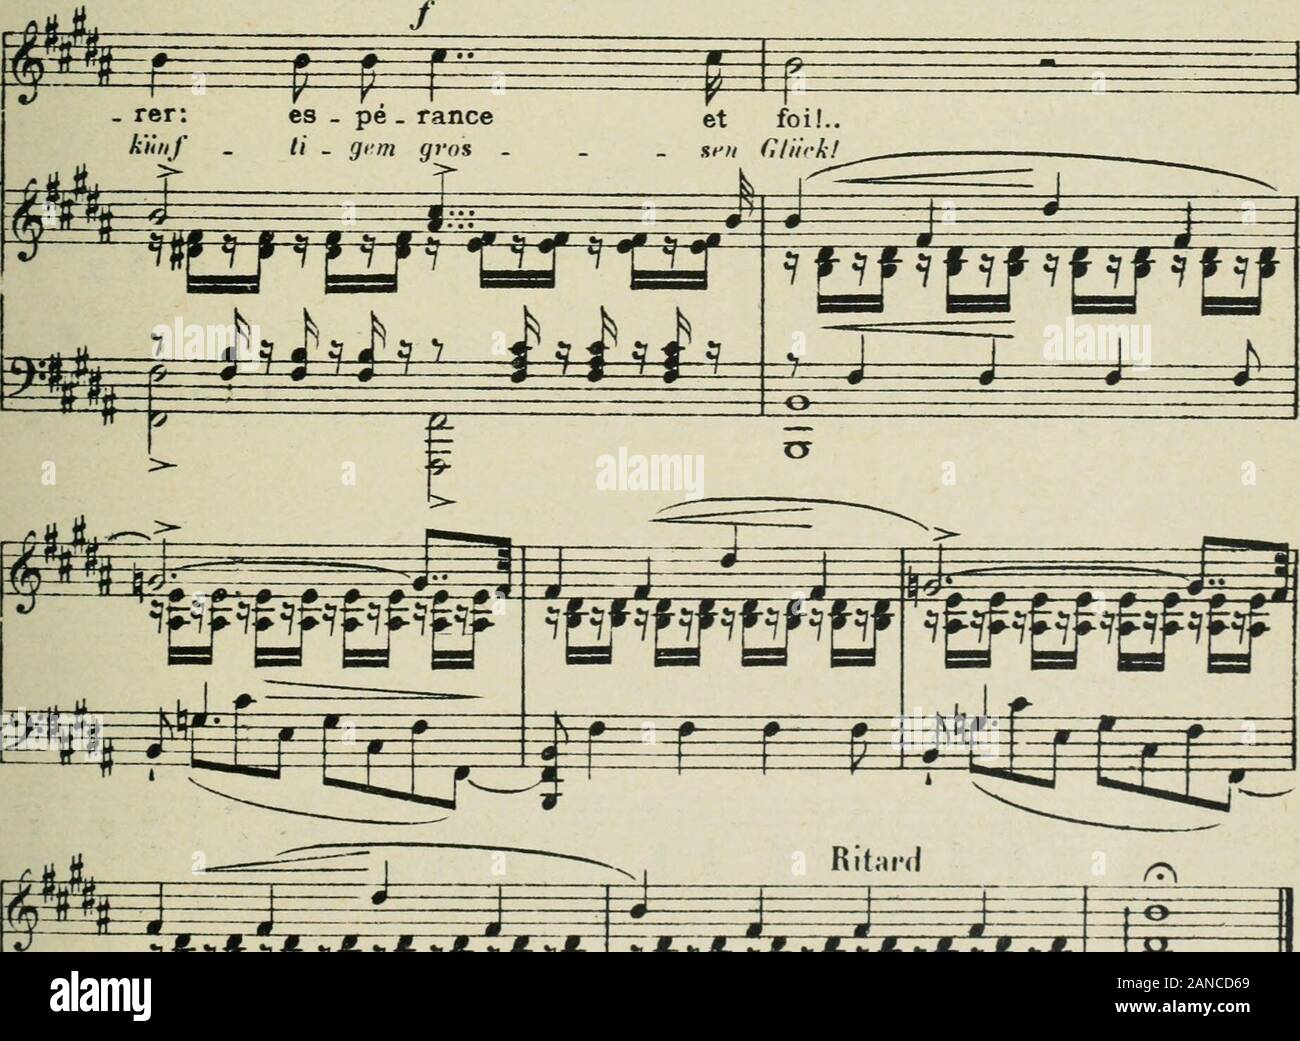 50 mélodies : chant et piano . TT1^ ?Signor?PsMfif come m ^ mi-T 1 M k? ?-•? Ped. ^ I. w^^^s^w J J J 12 Foto Stock